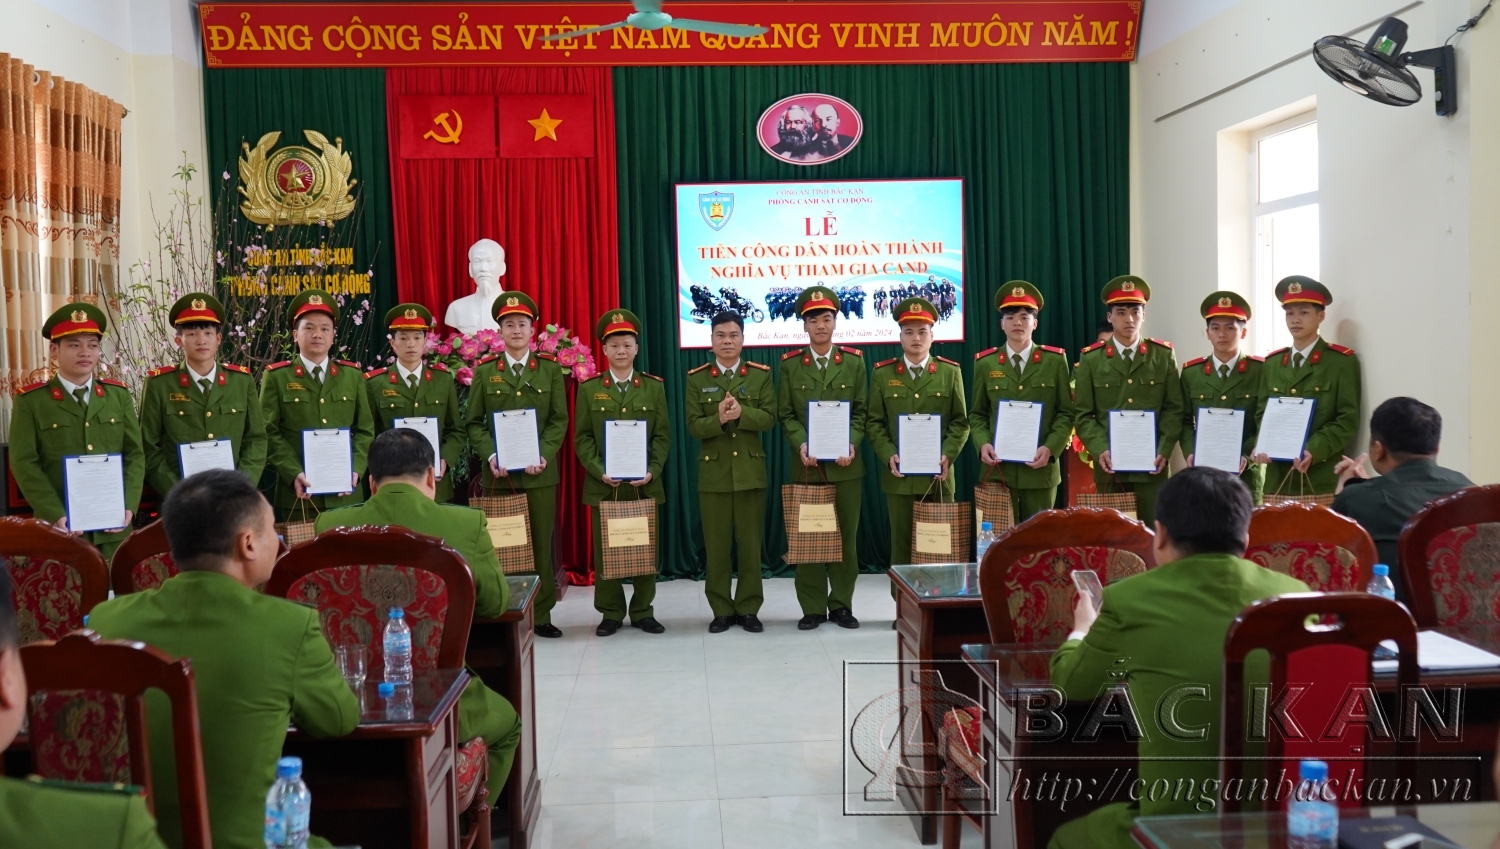 Trung tá Nguyễn Bằng Giang – Phó Trưởng phòng Cảnh sát cơ động trao quyết định và tặng quà lưu niệm cho các công dân hoàn thành nghĩa vụ